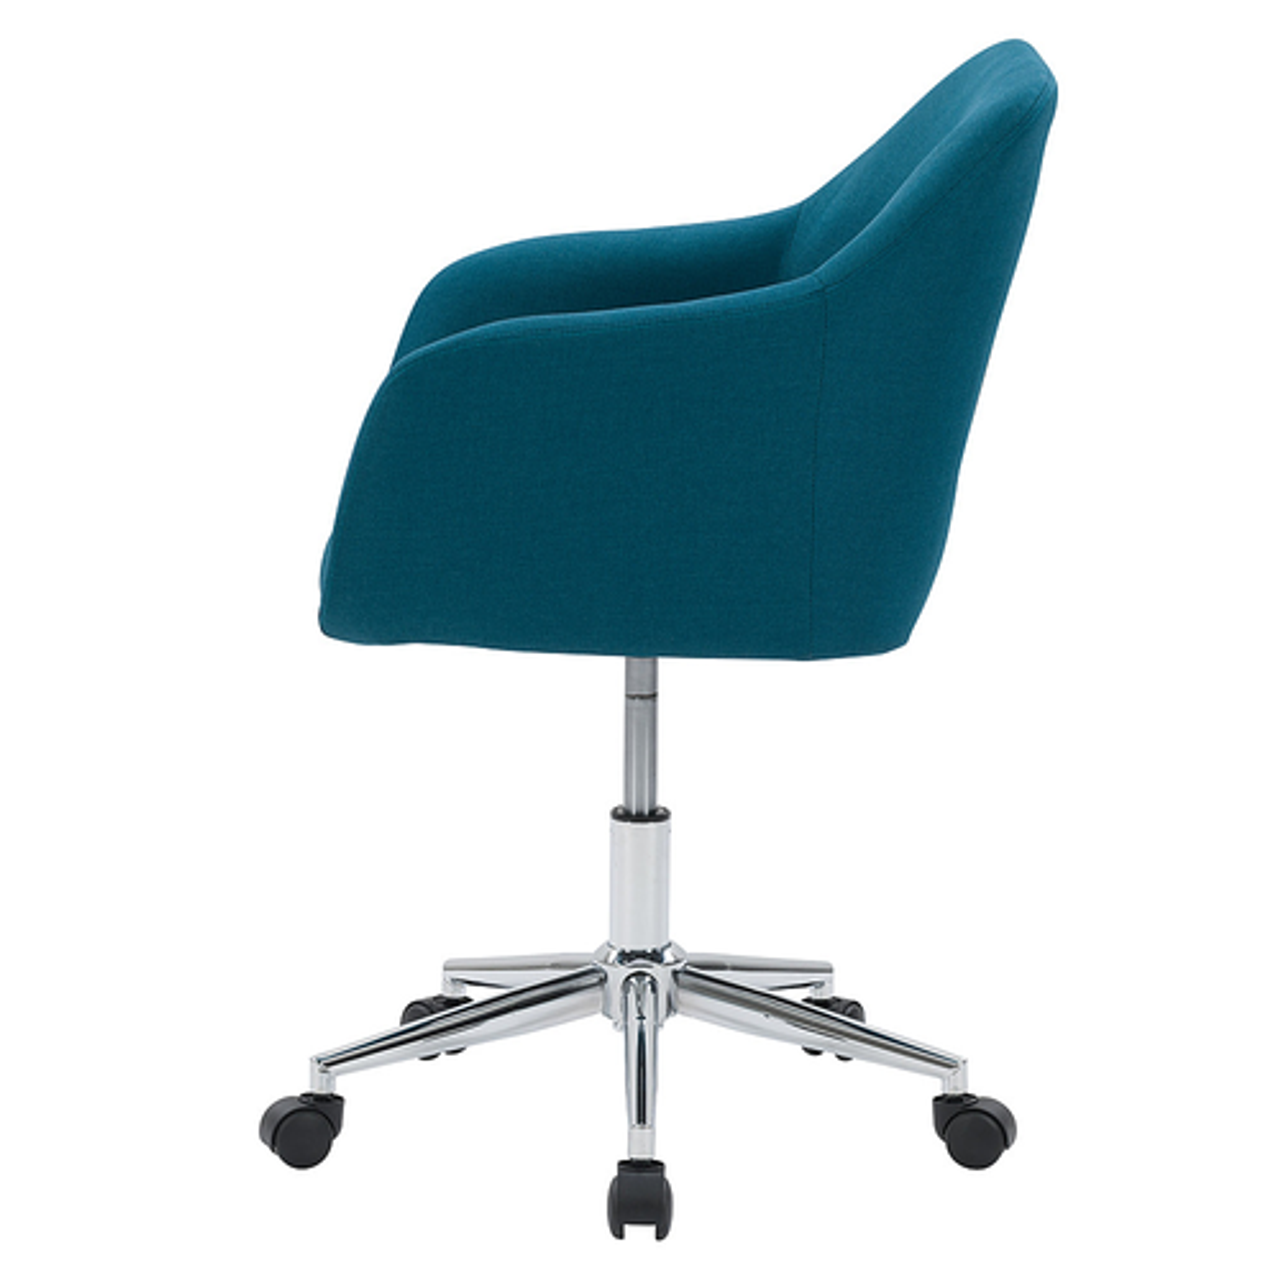 CorLiving Marlowe Upholstered Chrome Base Task Chair - Dark Blue